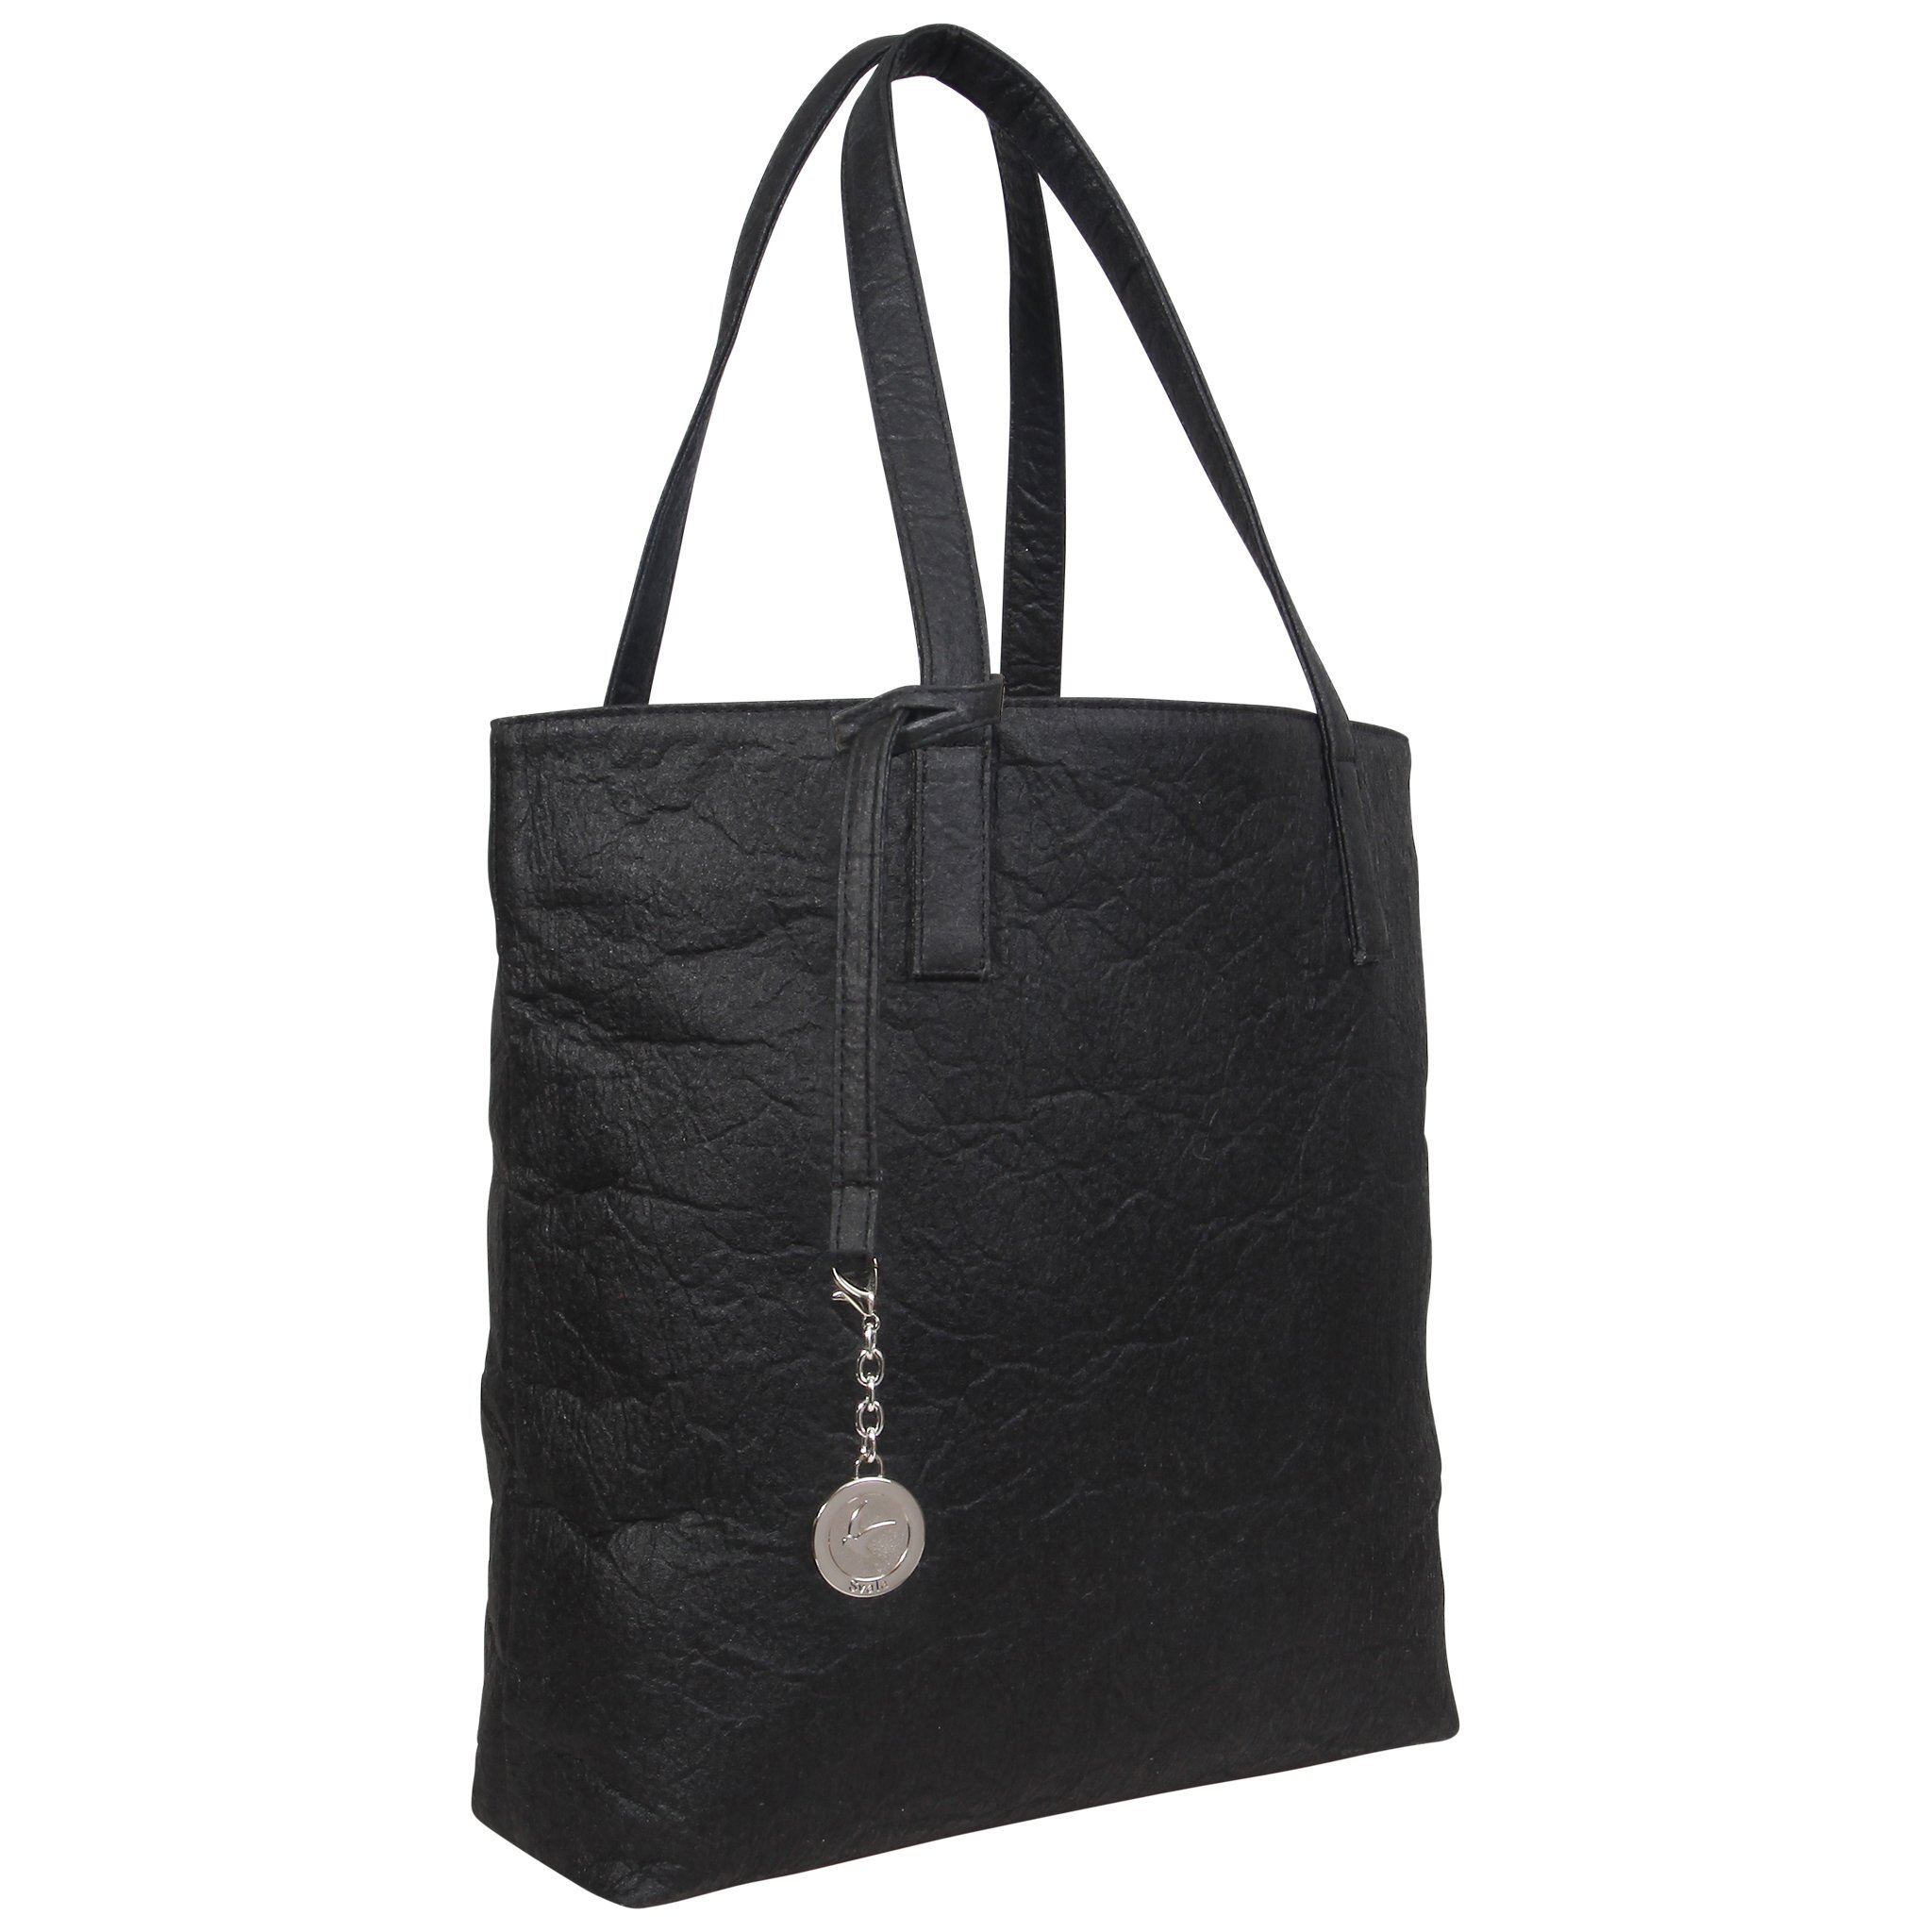 vegan-handbags-pinatex-pineapple-leather